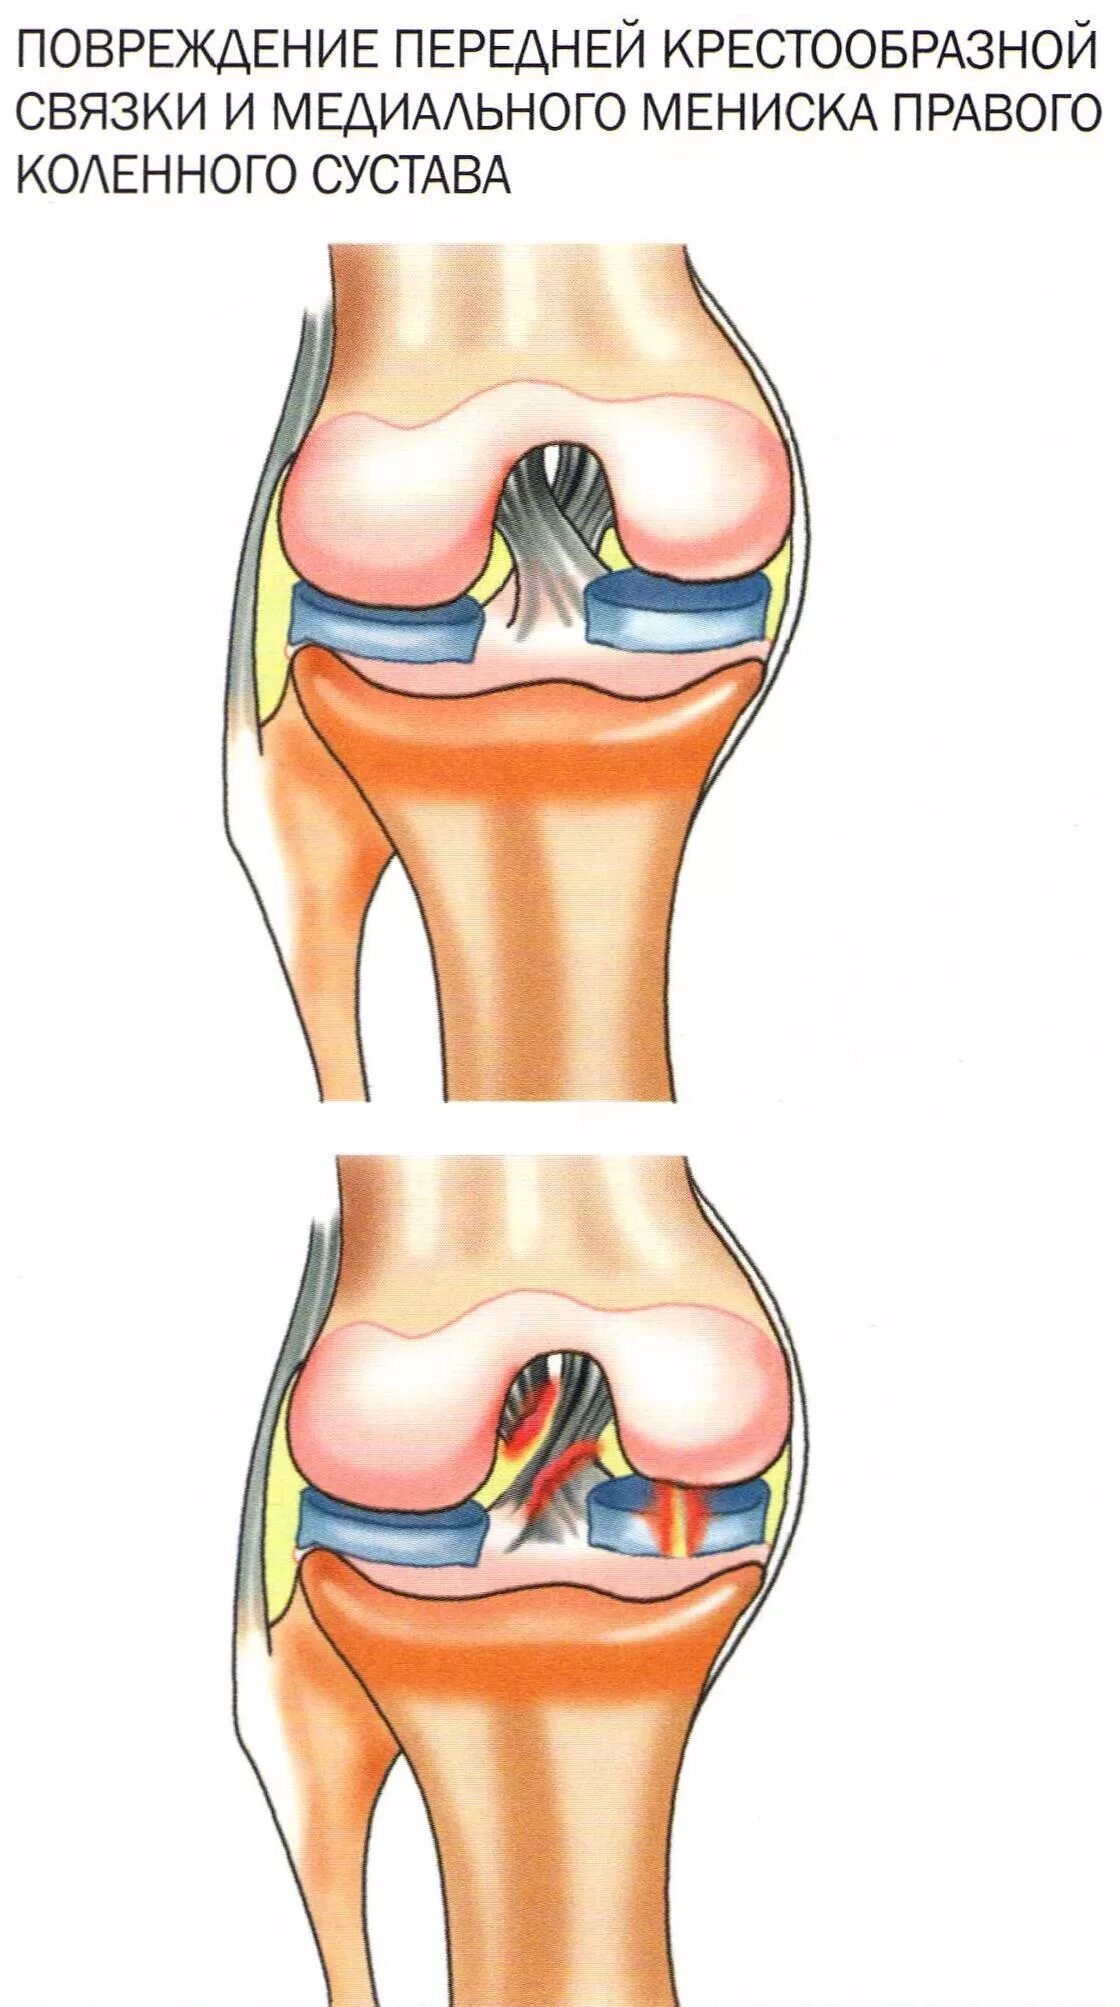 Мениск коленного сустава. Перерастяжение связок коленного сустава. Разрыв связок и мениска коленного сустава. Повреждение мениска коленного сустава симптомы.